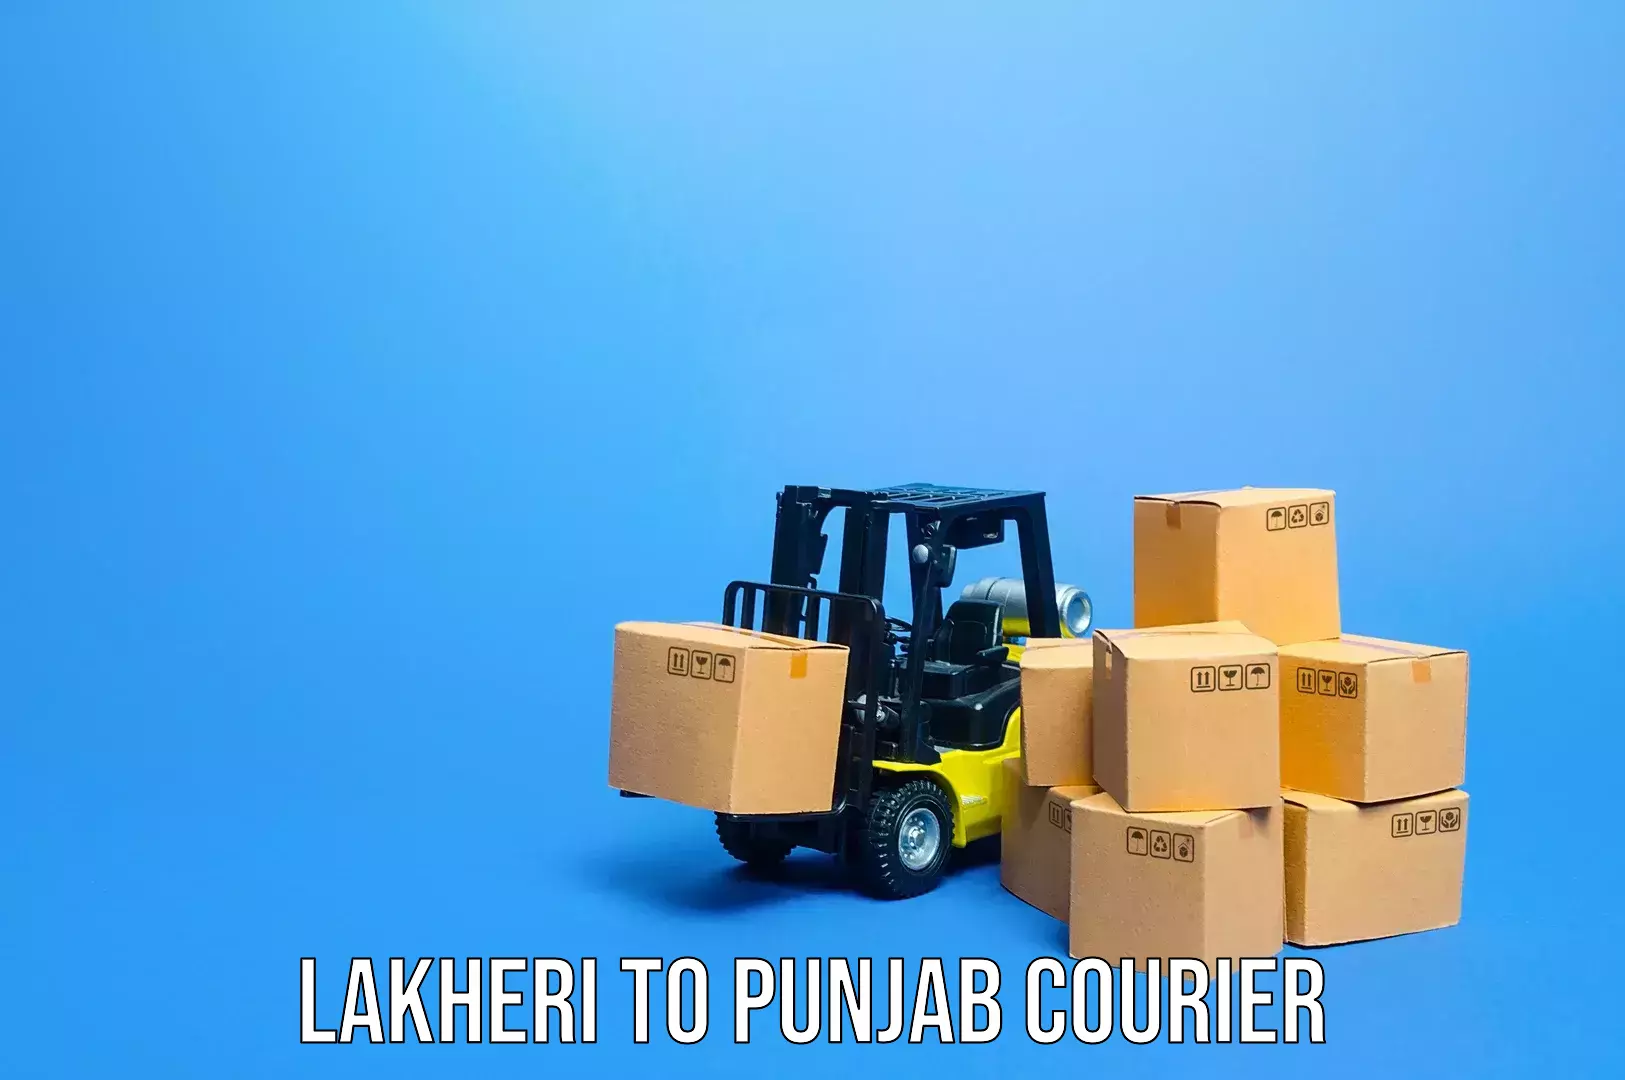 Luggage transport solutions Lakheri to Nabha